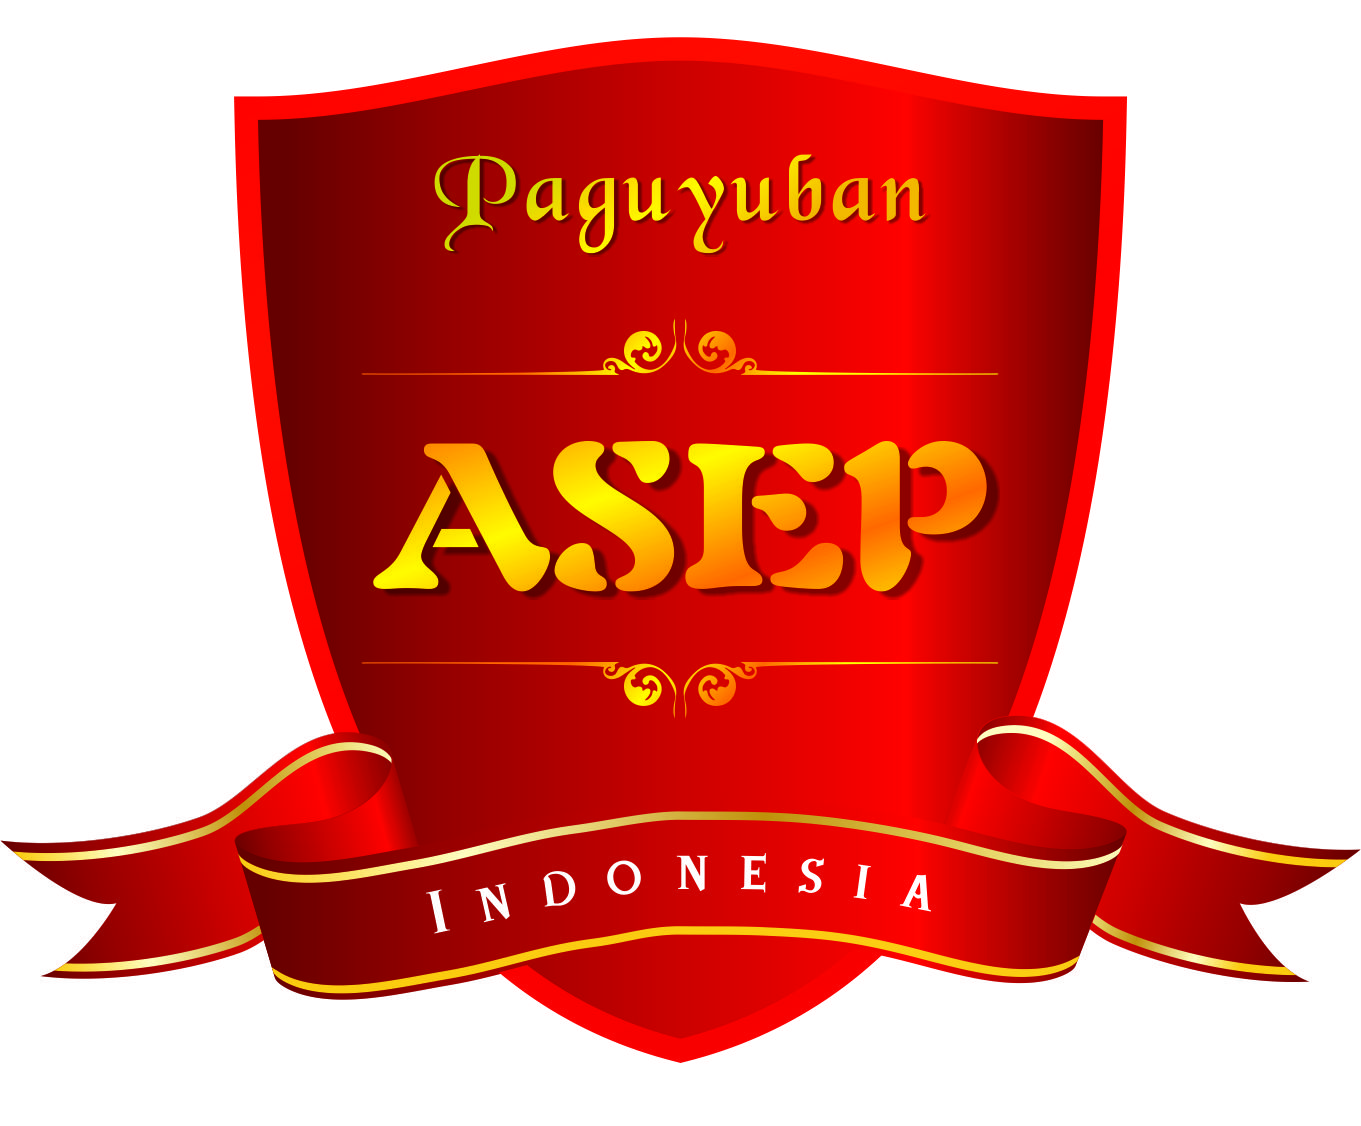  Paguyuban  ASEP Usulan Logo anagram Asep Dedih